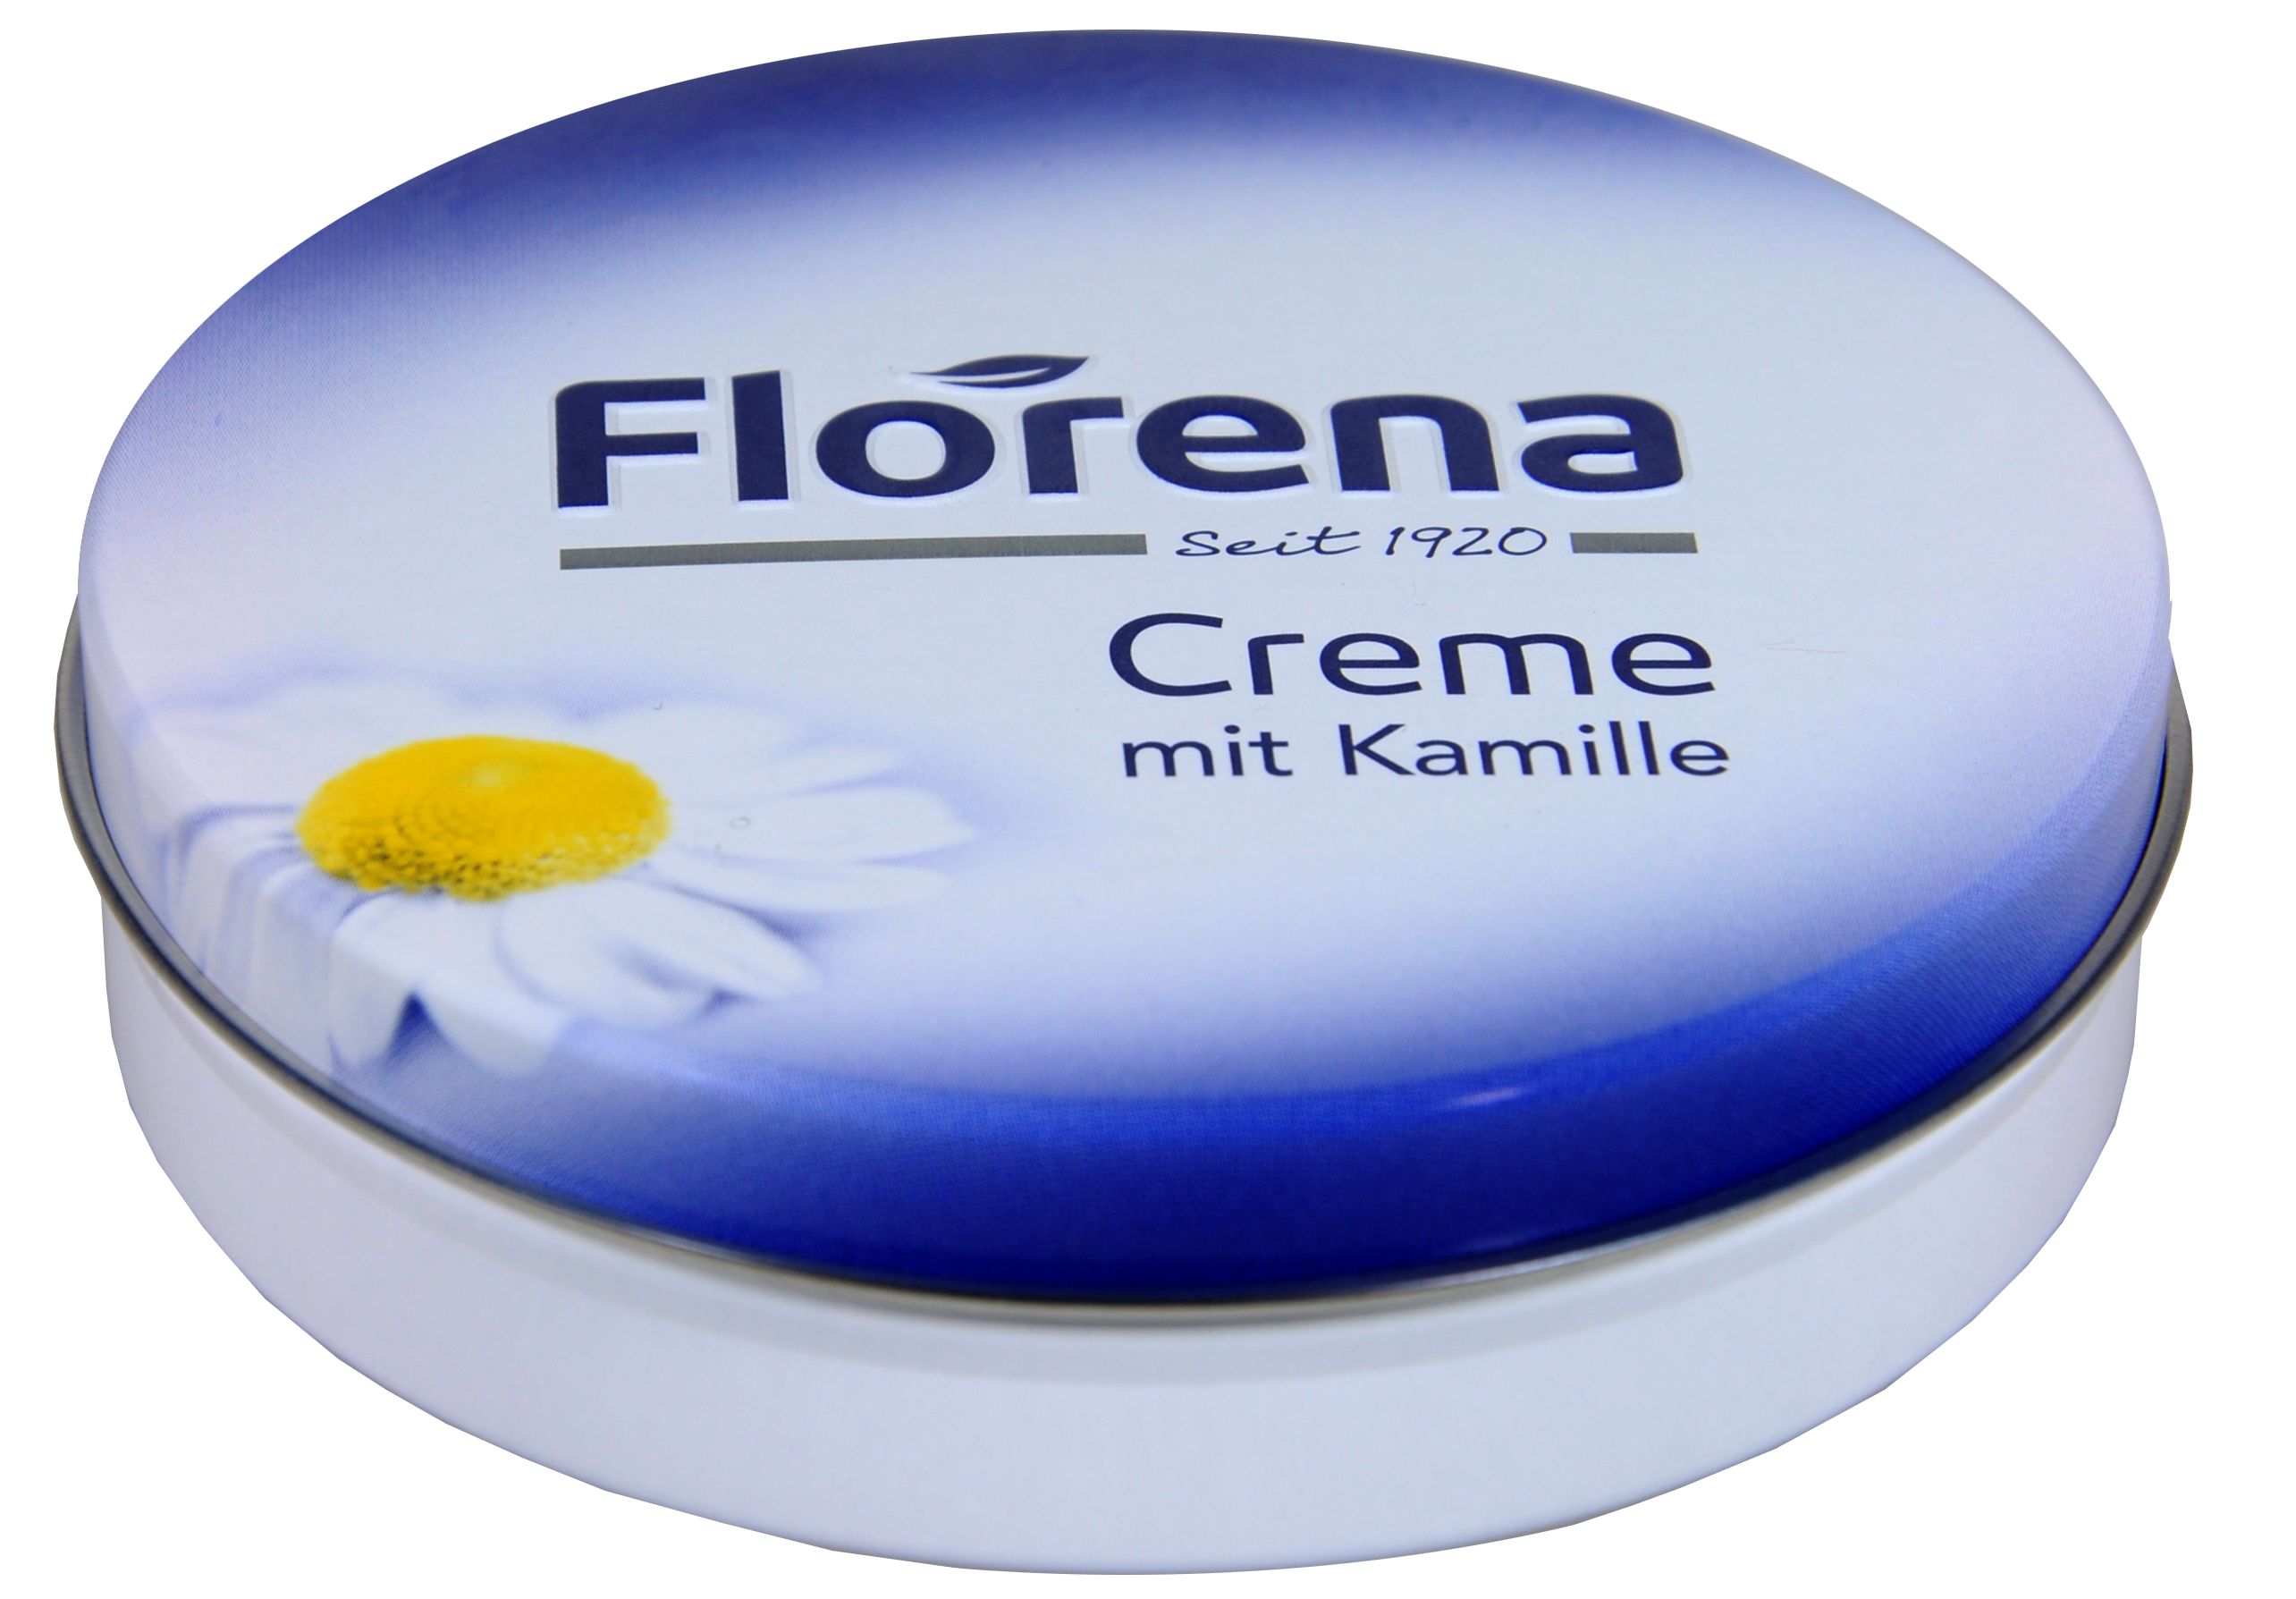 Voorkomen Meer belegd broodje Florena Creme Kamille, 150 ml | bie-dro